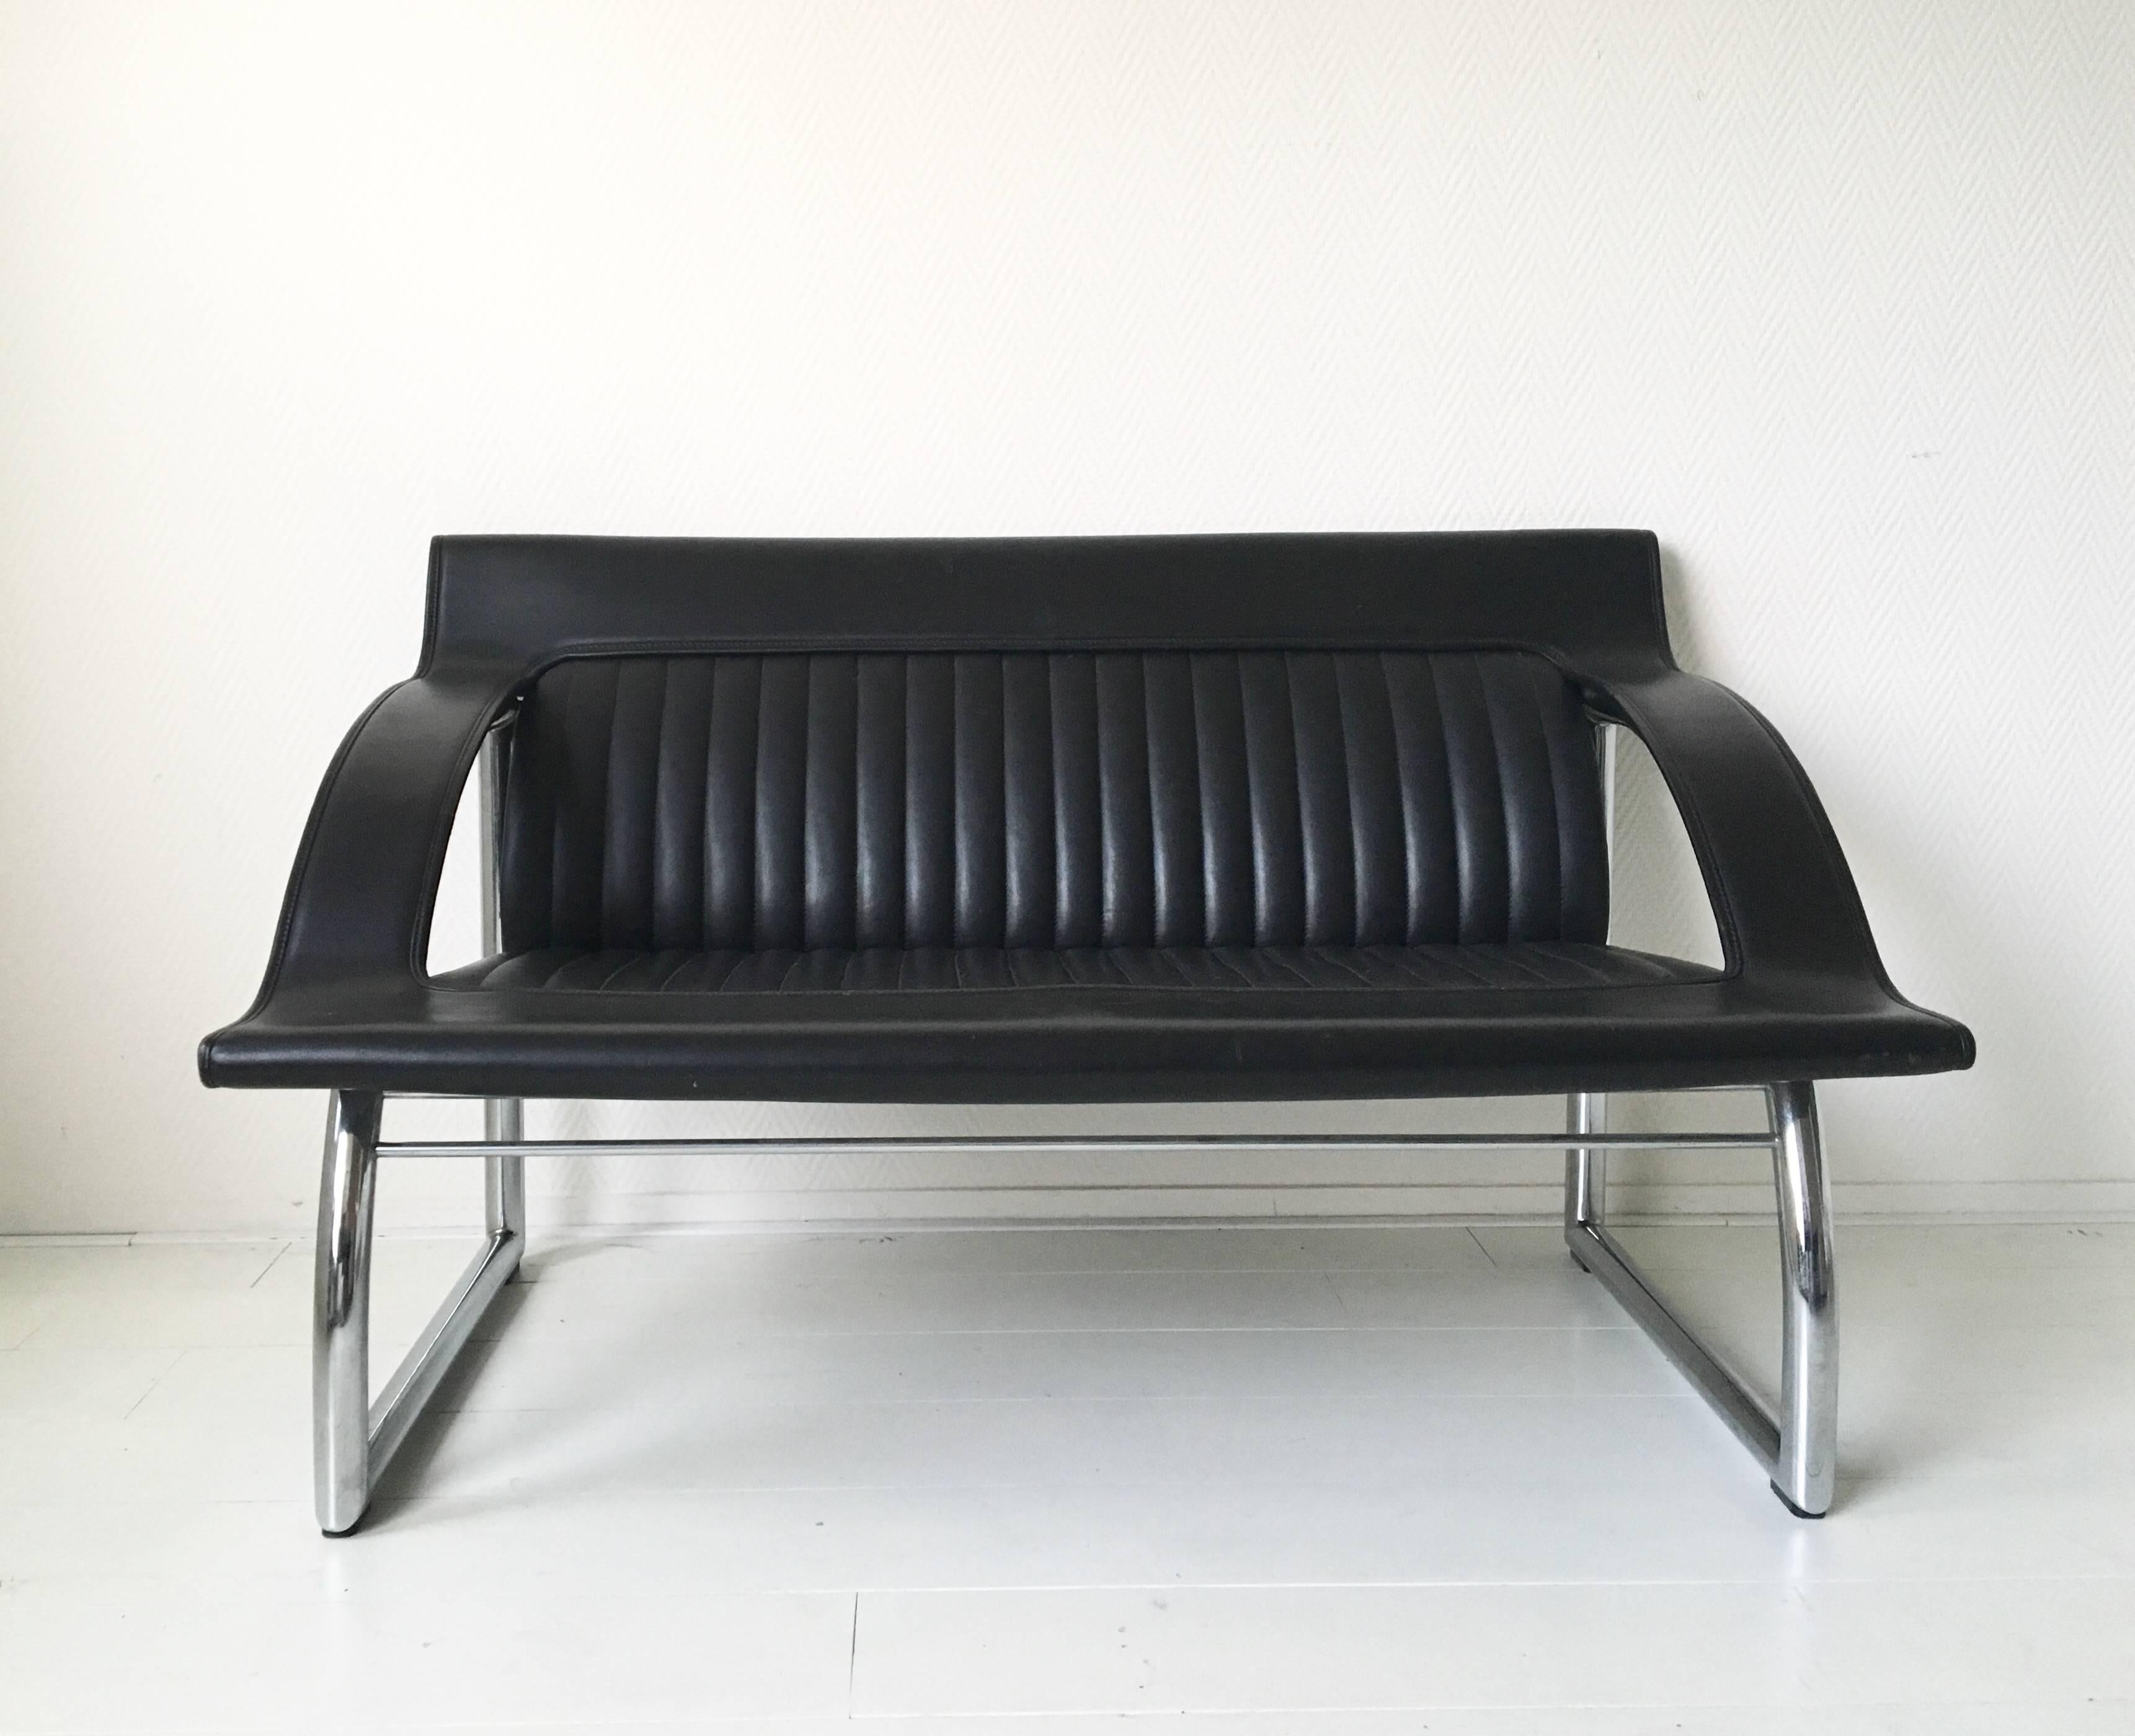 Cet ensemble absolument stupéfiant a été conçu par Gerd Lange pour De Sede Switzerland, vers 1985. Il se compose d'un canapé deux places et d'une chaise longue avec un épais revêtement en cuir noir et une base tubulaire chromée. Ce set n'est plus